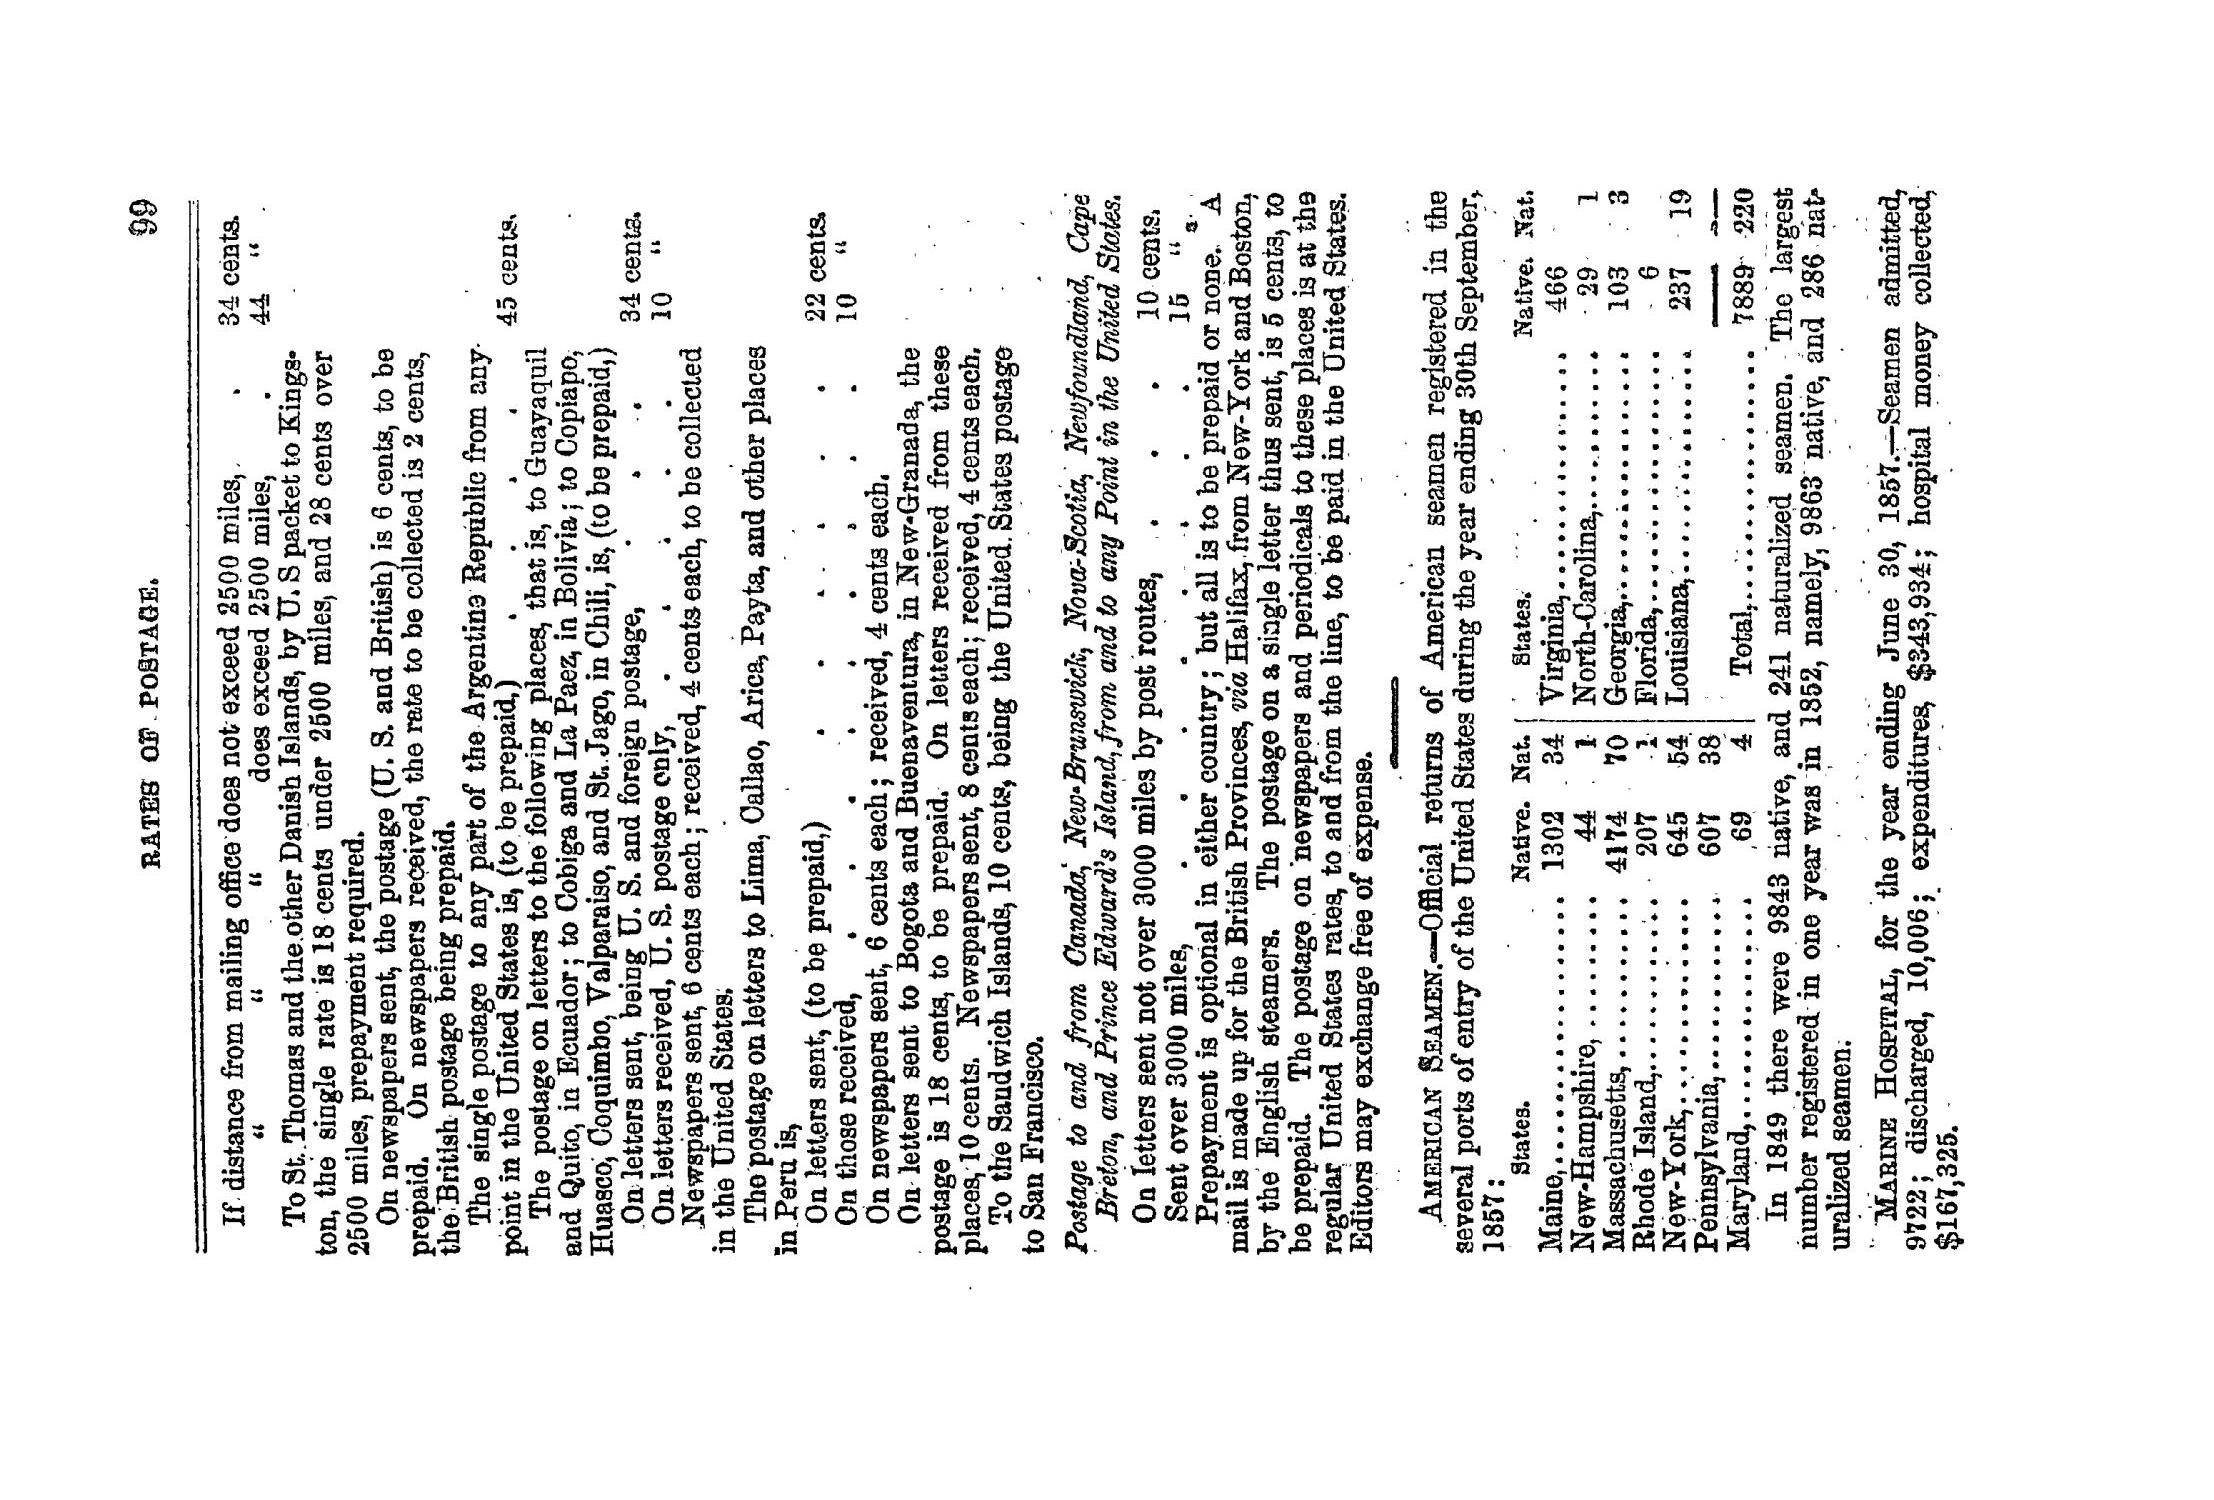 Texas Almanac, 1859
                                                
                                                    99
                                                